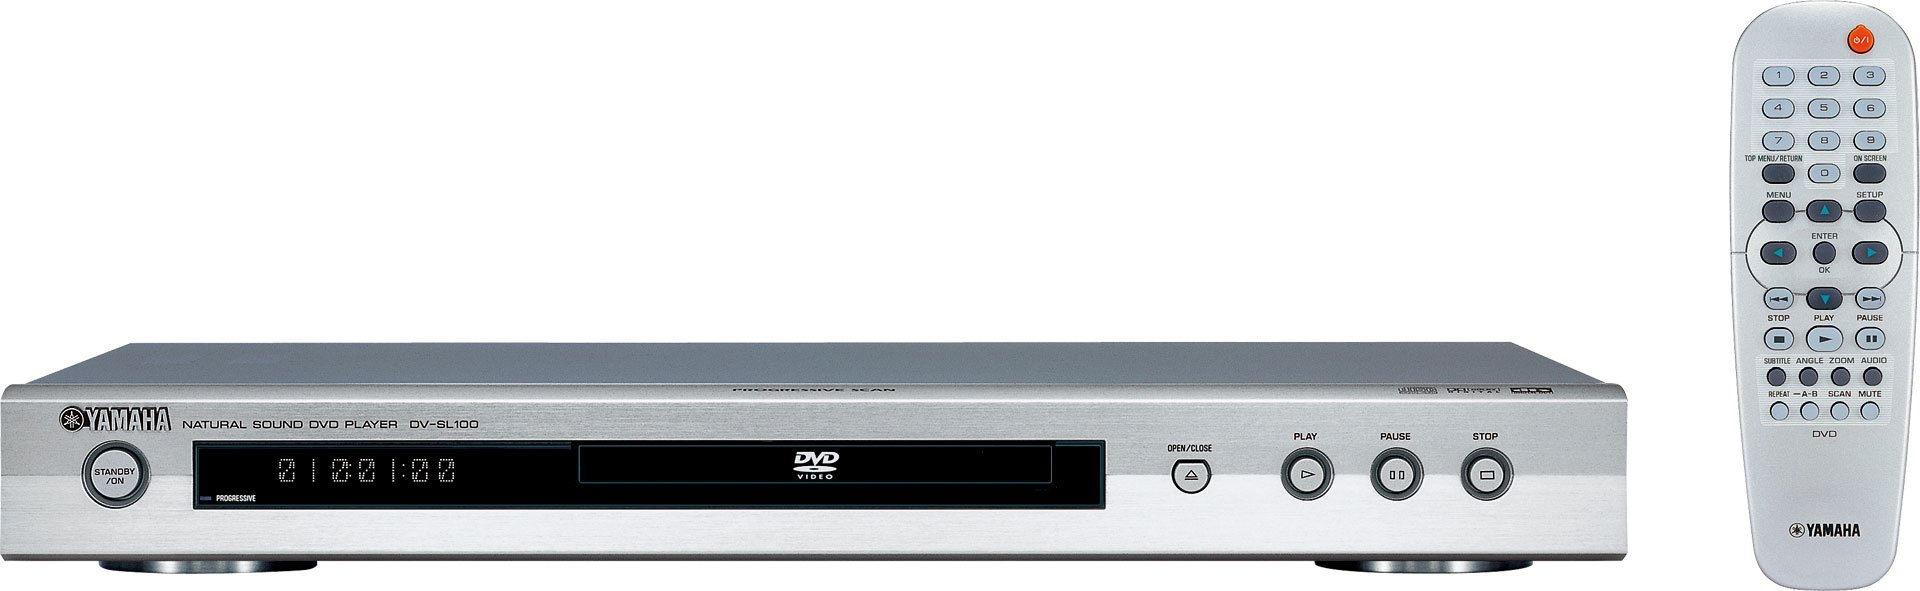 ヤマハ | DV-SL100 - DVD Players - 概要